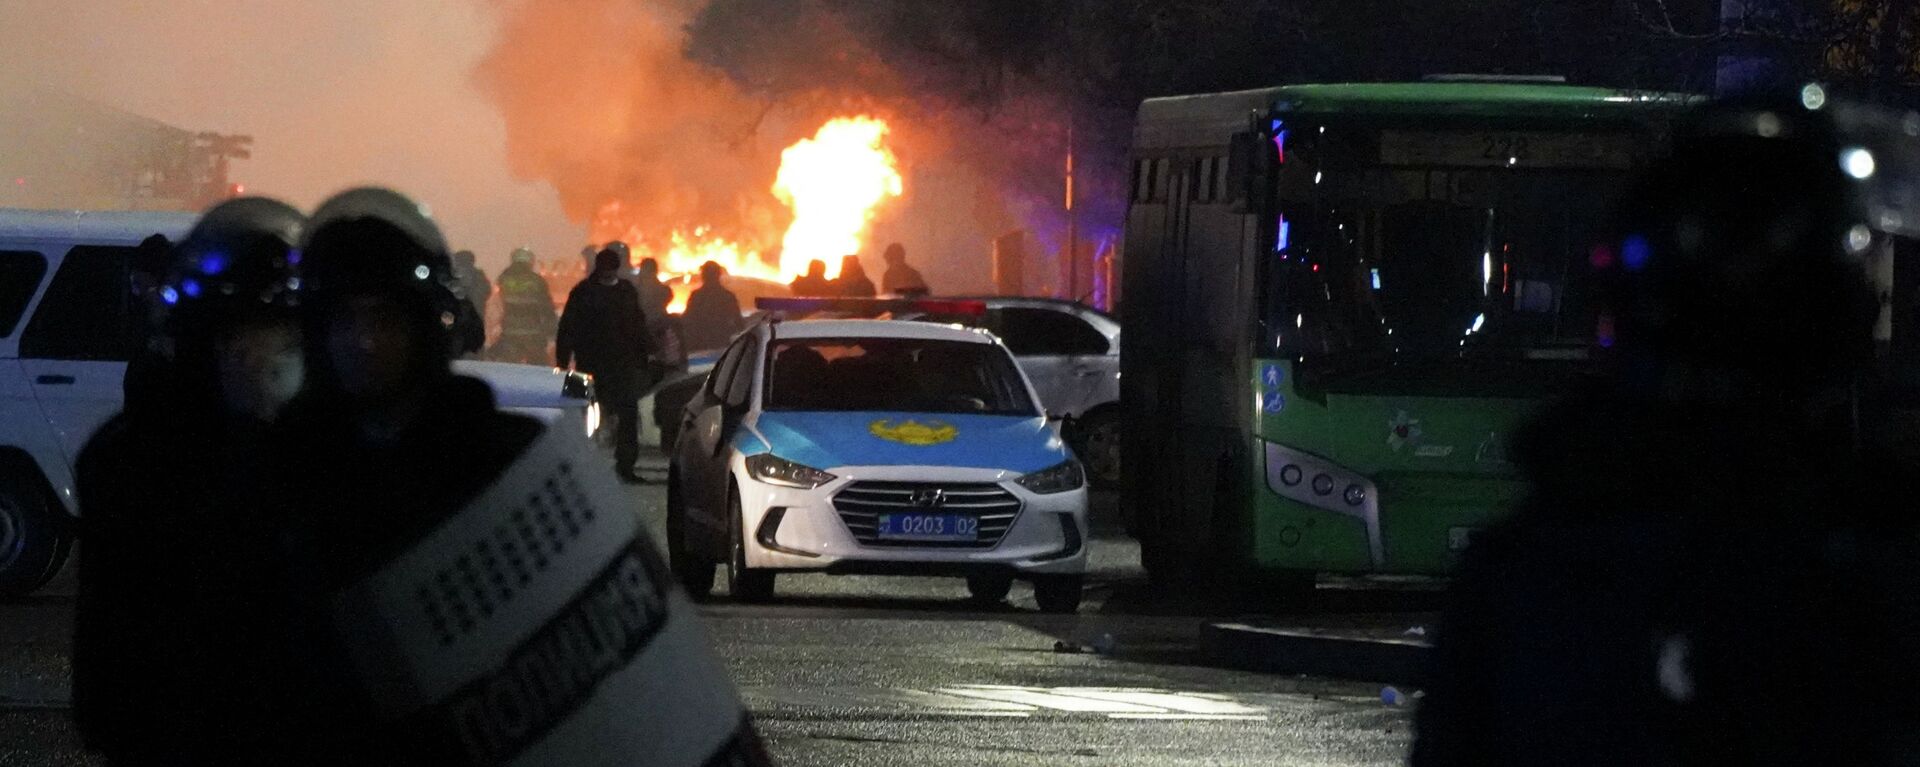 Полицейские в огне во время столкновений с протестующими в центре Алматы, Казахстан, среда, 5 января 2022 г.  - Sputnik Казахстан, 1920, 02.11.2022